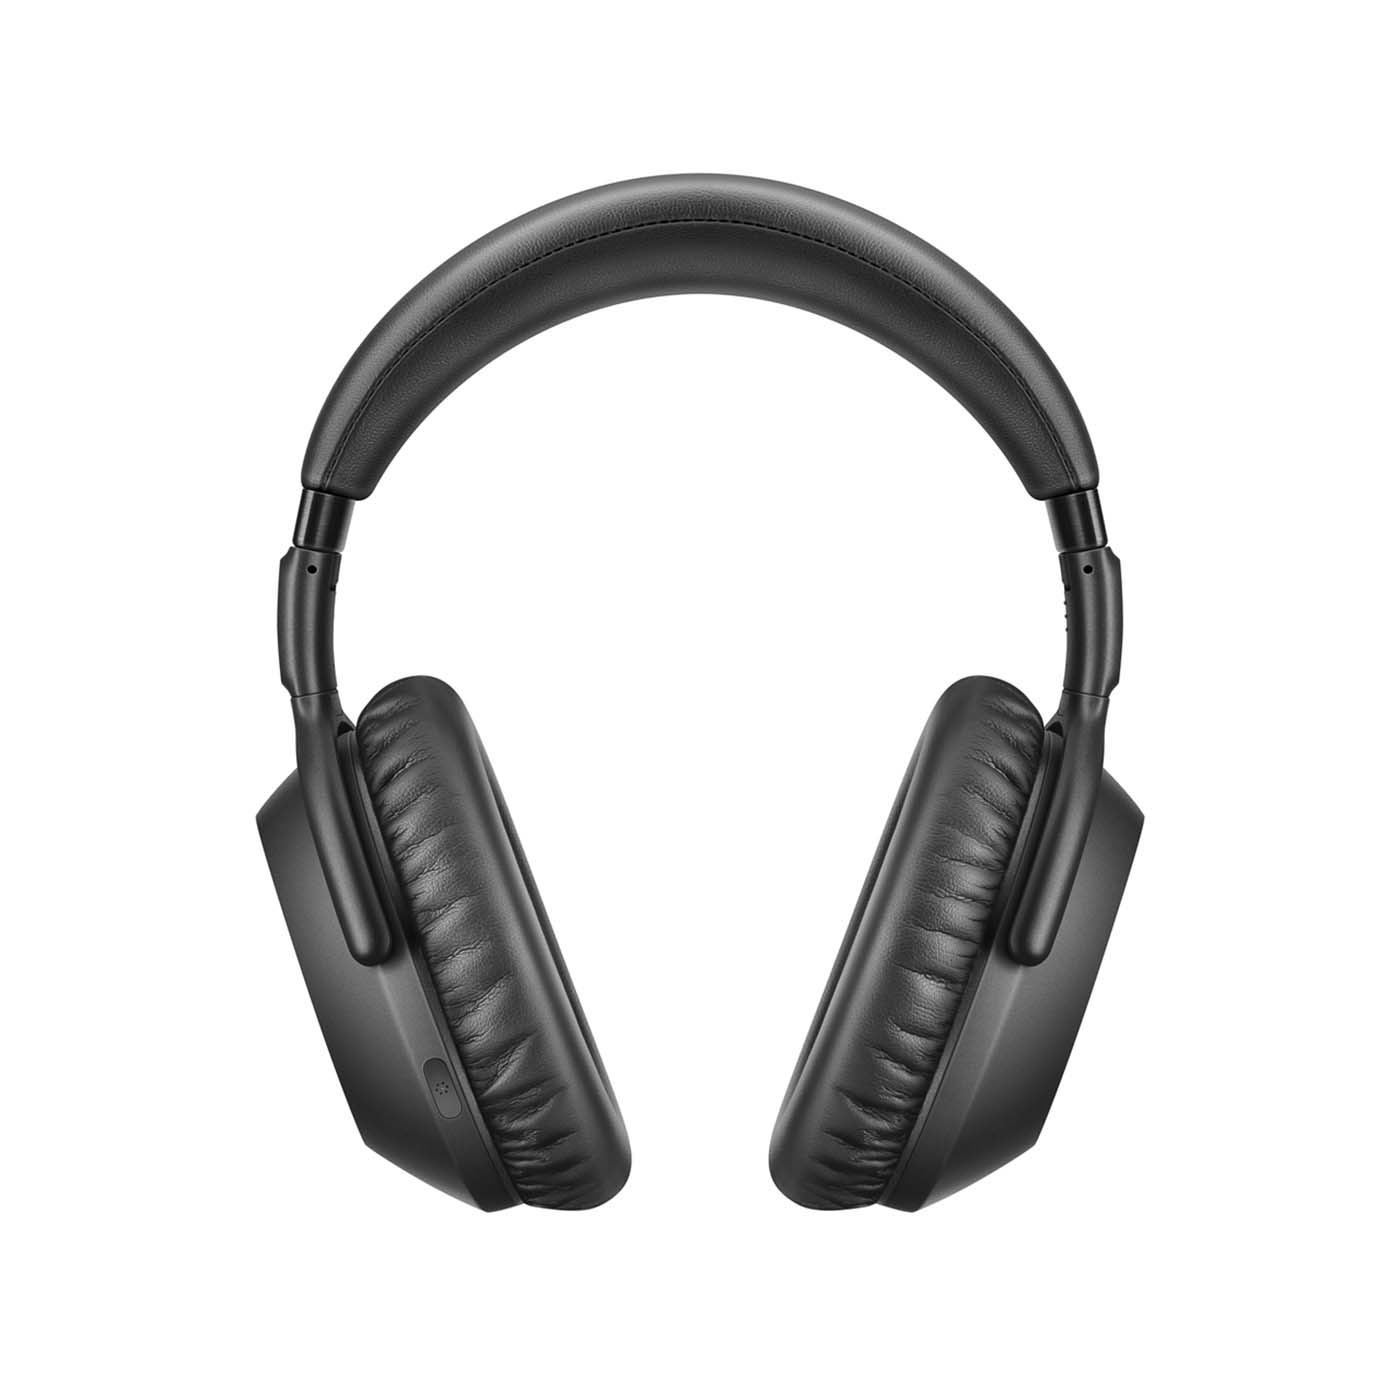 Audífonos de Diadema SENNHEISER Inalámbricos Bluetooth Over Ear PXC 550 II Cancelación de Ruido Negro